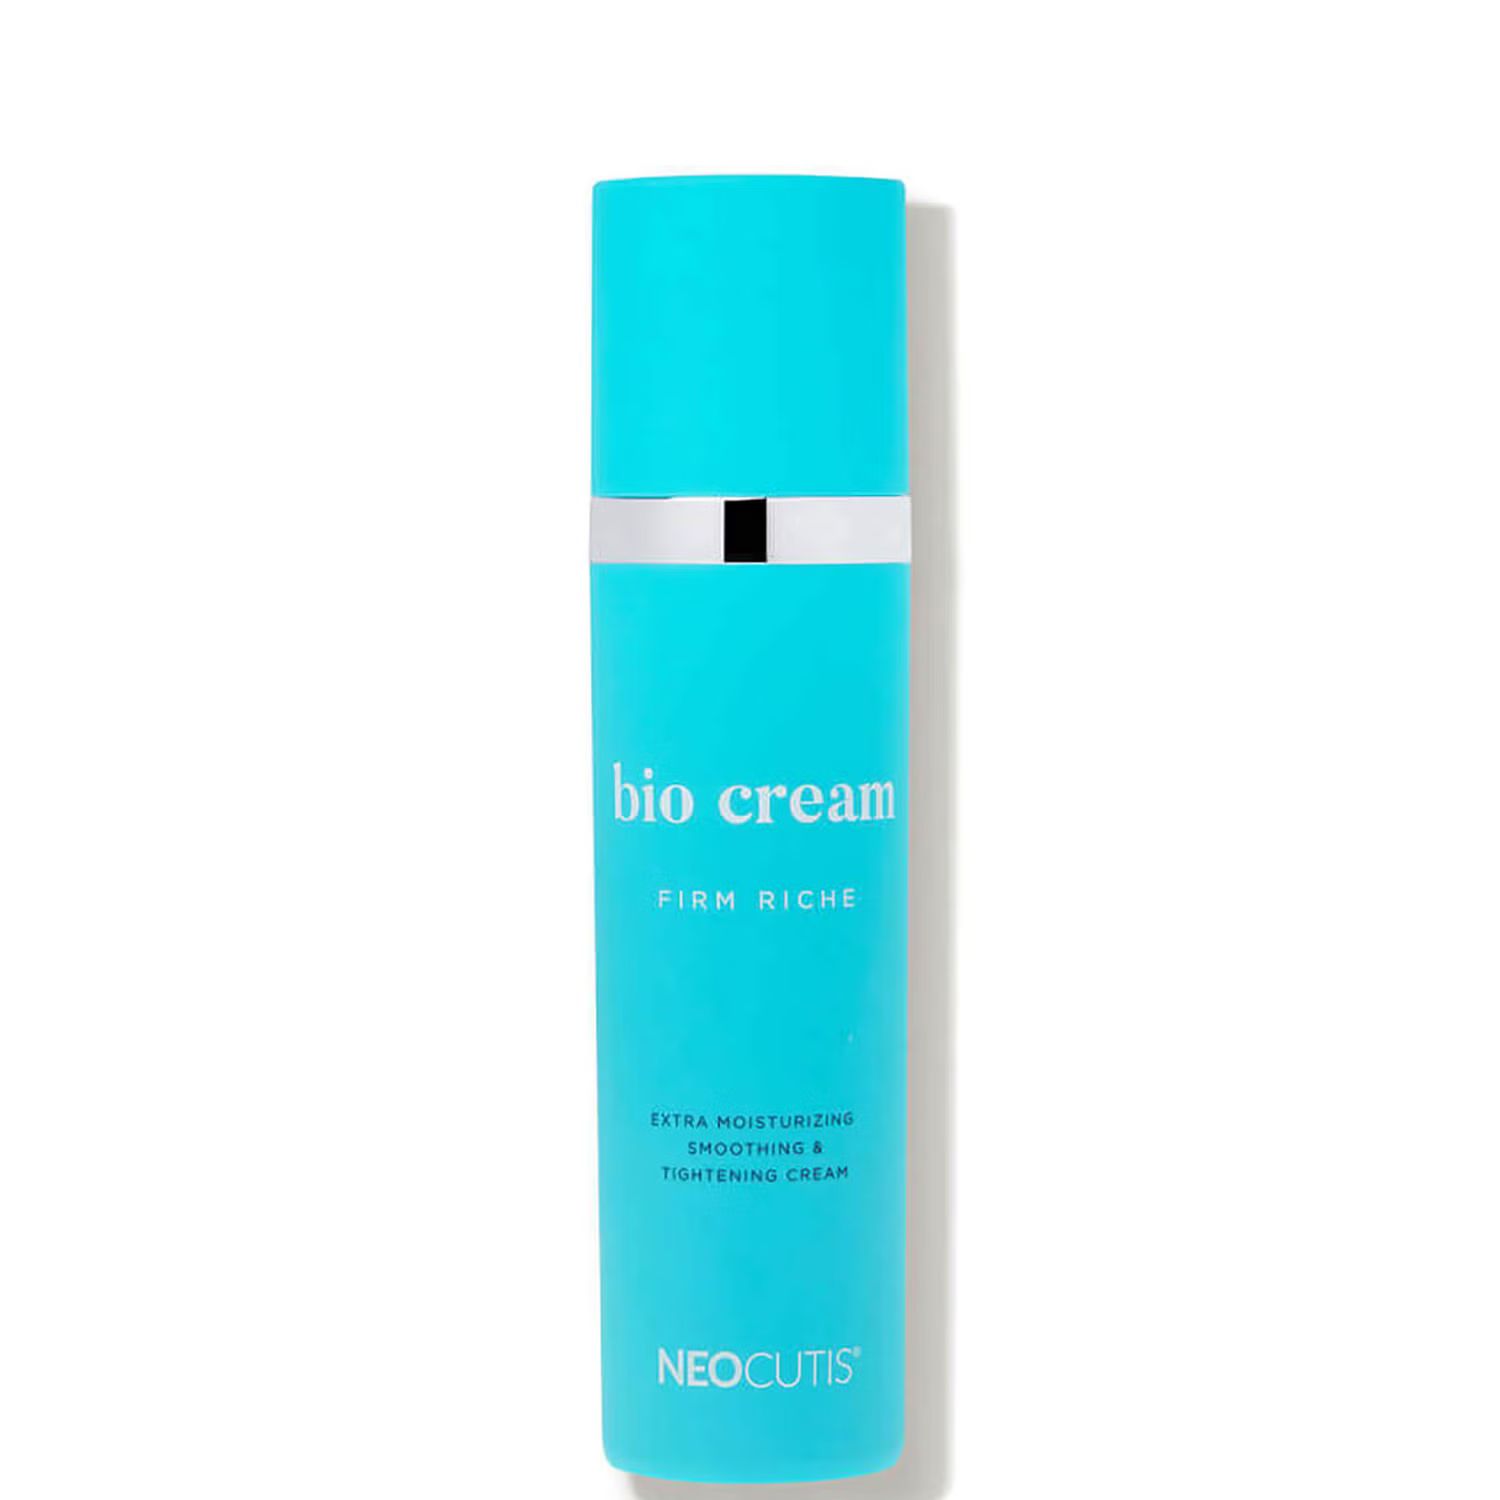 Neocutis Bio Cream Firm Riche 1.69 fl. oz. | Skinstore